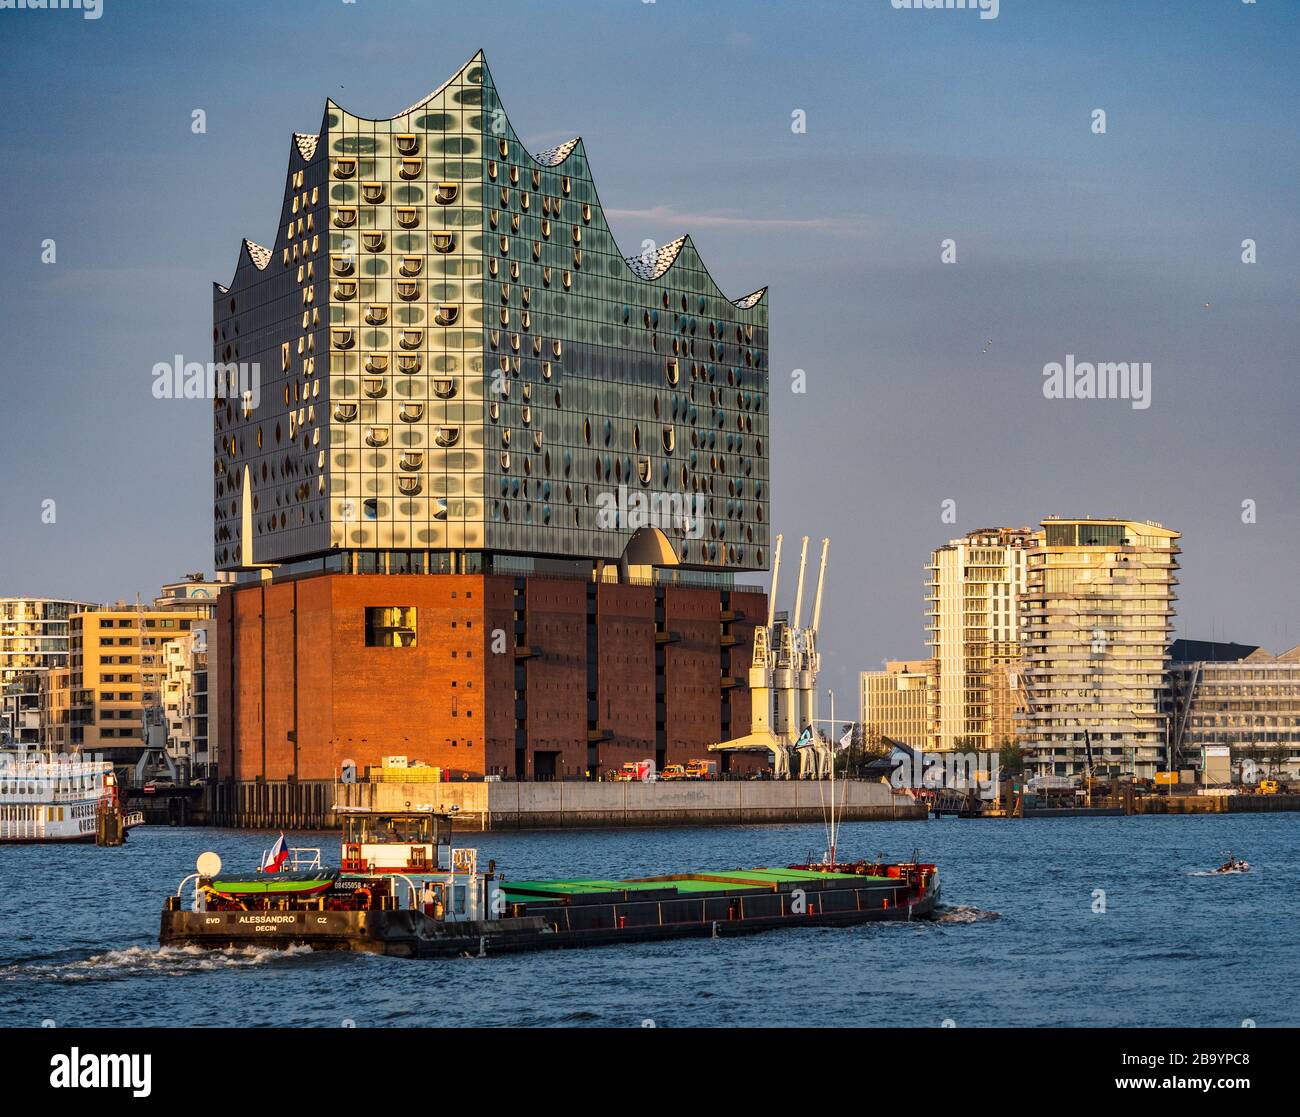 Fluss-Elbe-Schiffsverkehr in der Nähe der Elbphilharmonie Hamburg - Elbphilharmonie - Elbi - Konzerthalle Hamburg - Architekt Herzog & de Meuron - 2017. Stockfoto